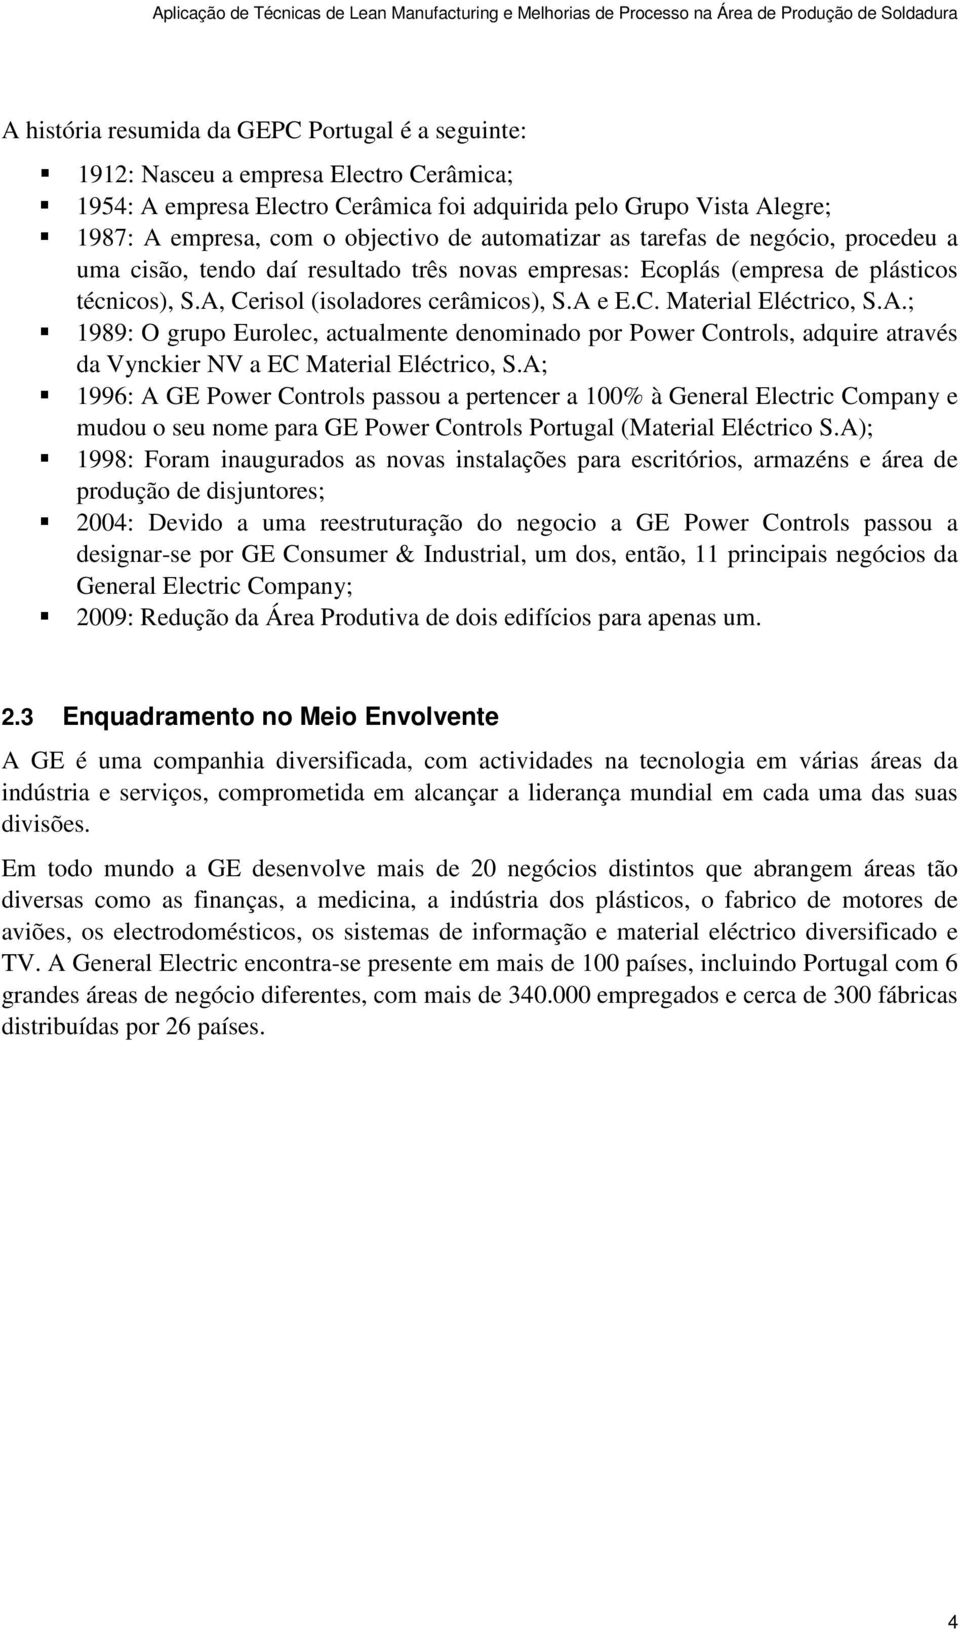 A.; 1989: O grupo Eurolec, actualmente denominado por Power Controls, adquire através da Vynckier NV a EC Material Eléctrico, S.